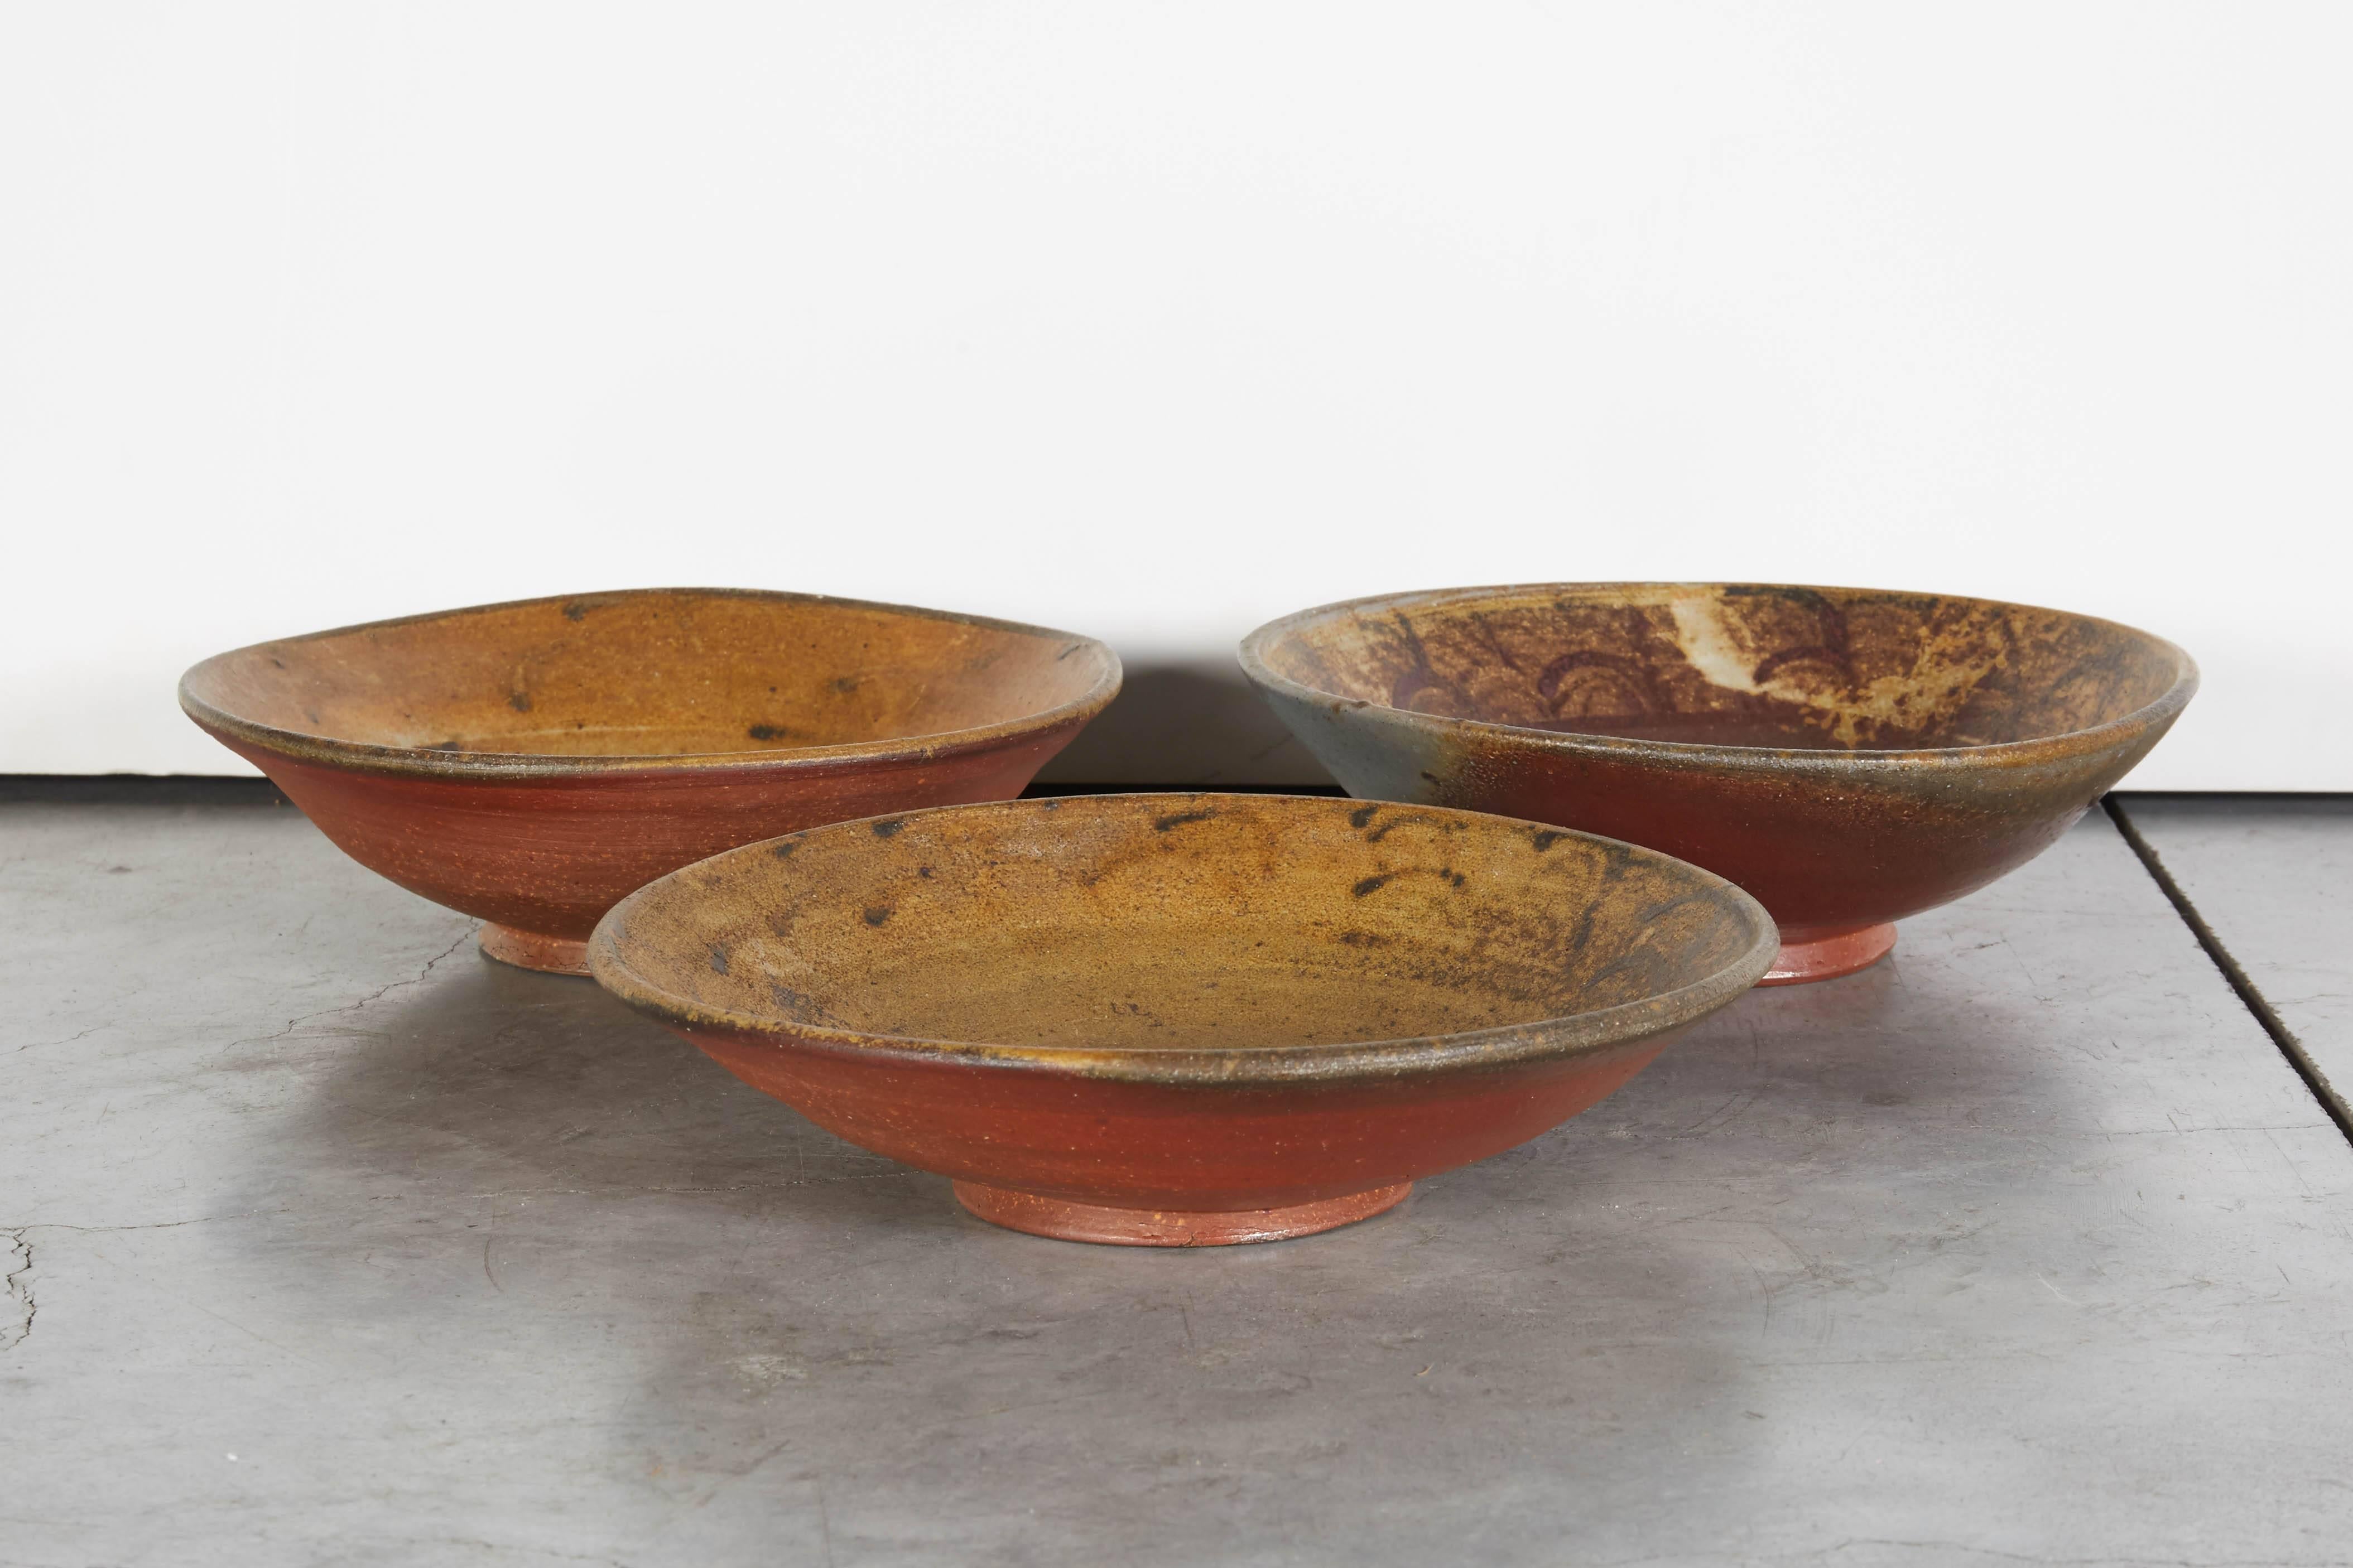 Trois bols en céramique de Bizen, fabriqués à la main au XXe siècle. Ces pièces ont été cuites lentement pendant 10 jours ou plus dans les fours traditionnels de la province de Bizen au Japon et présentent les traces caractéristiques de la cendre